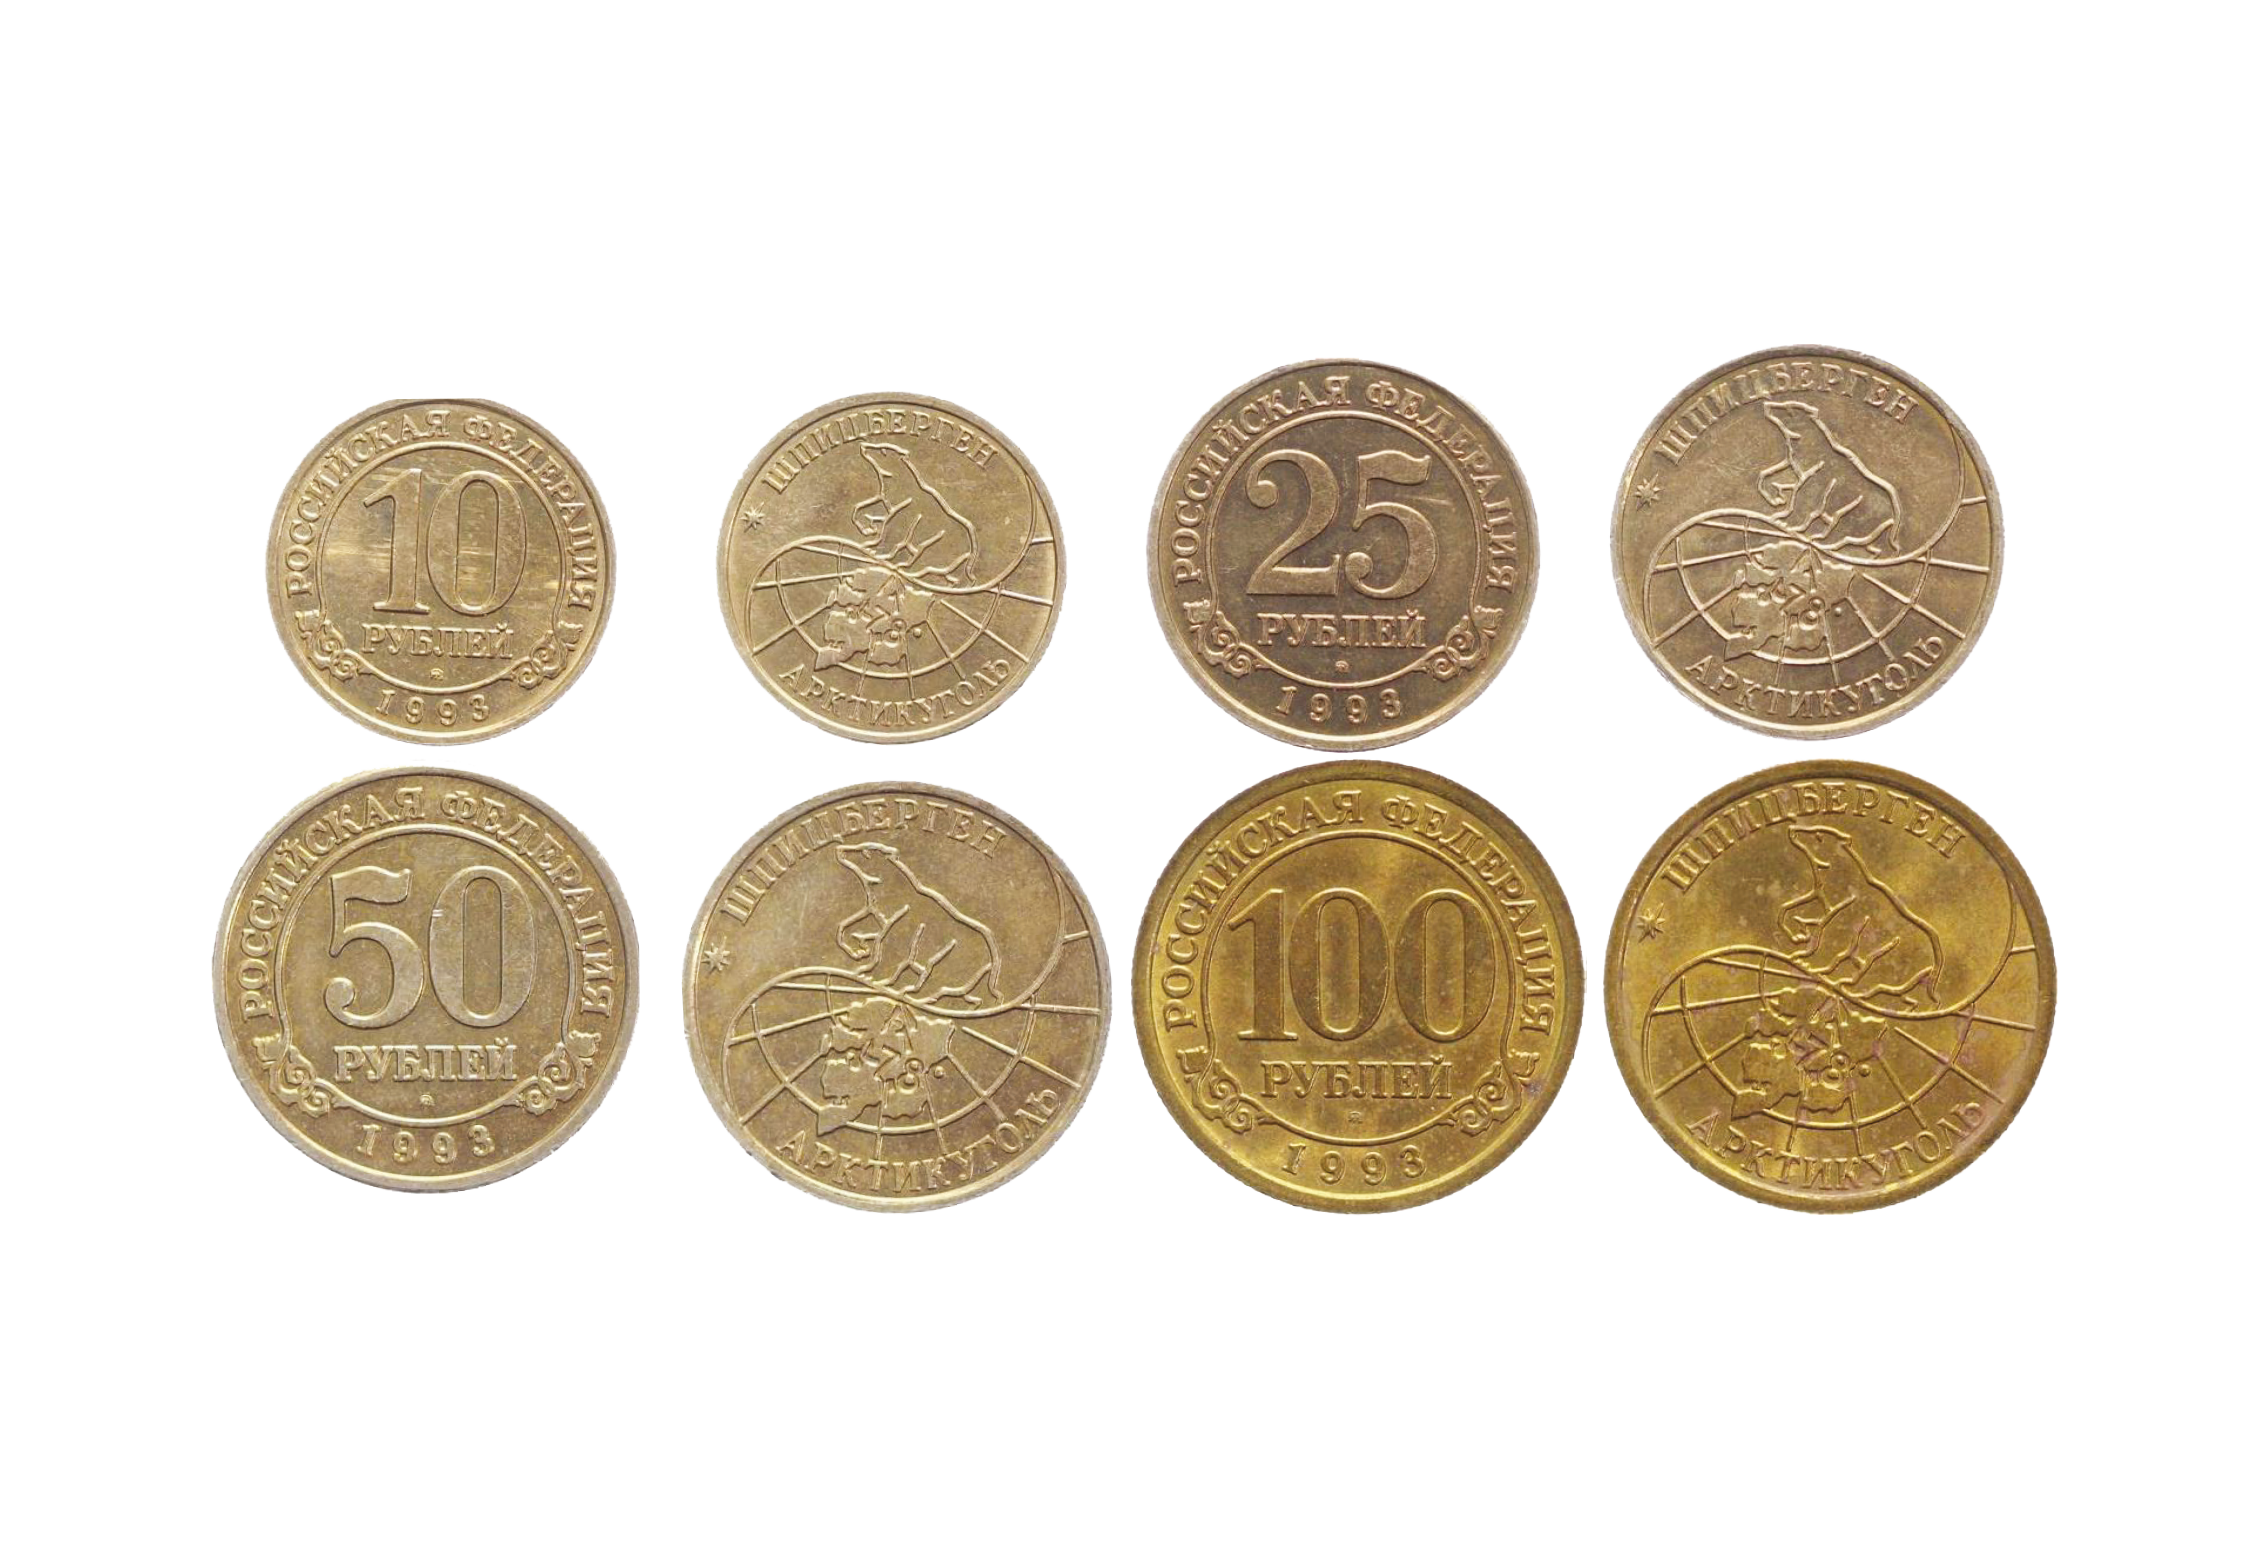   Hele 4 mønter, der markerer 100-årsdagen for underskrivelsen af Svalbard-traktaten.